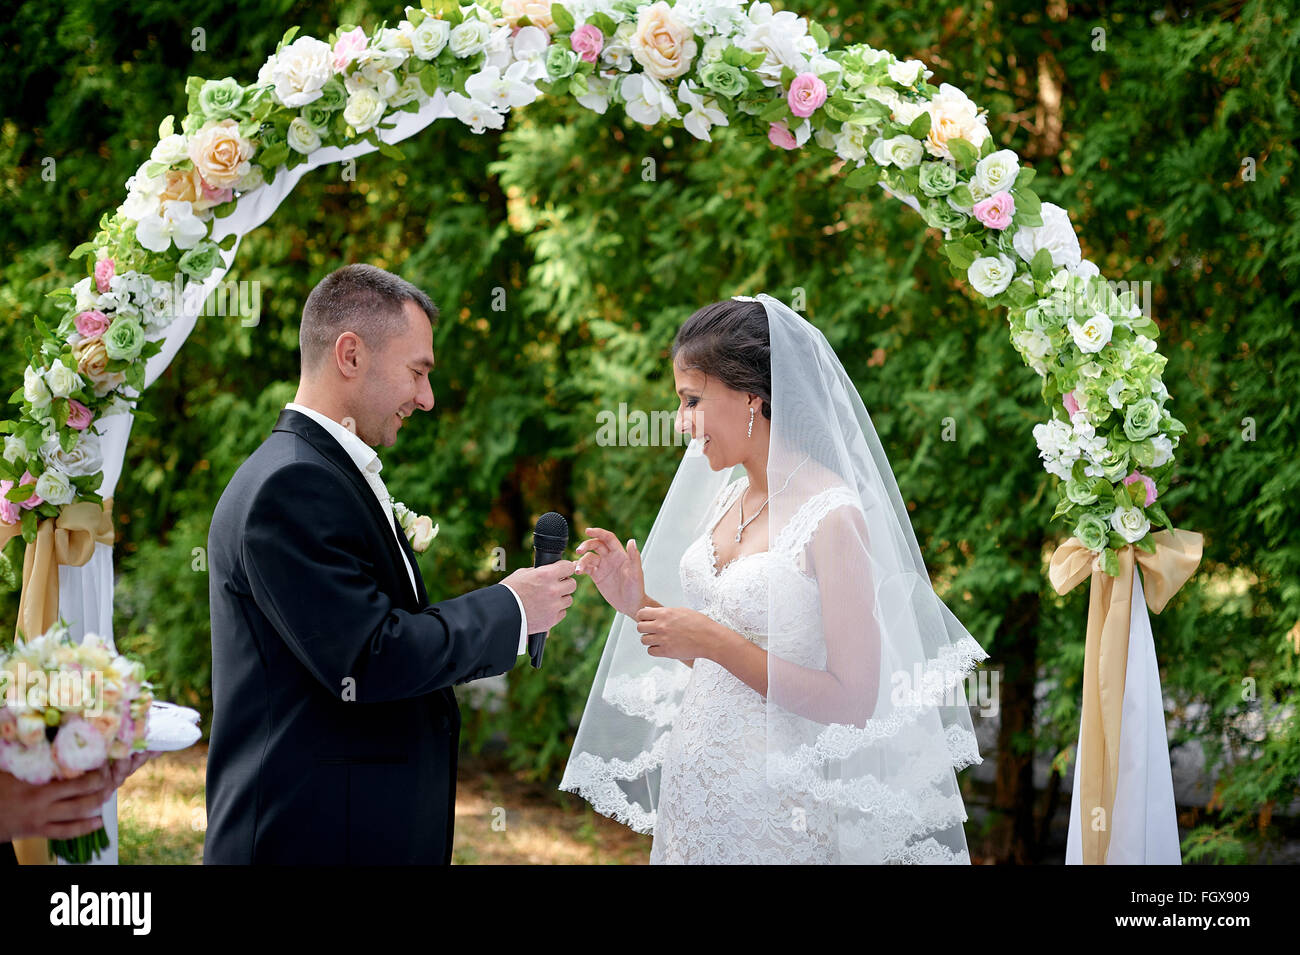 Bräutigam die Braut Kleider einen Ring am Finger bei einer Hochzeitszeremonie Stockfoto